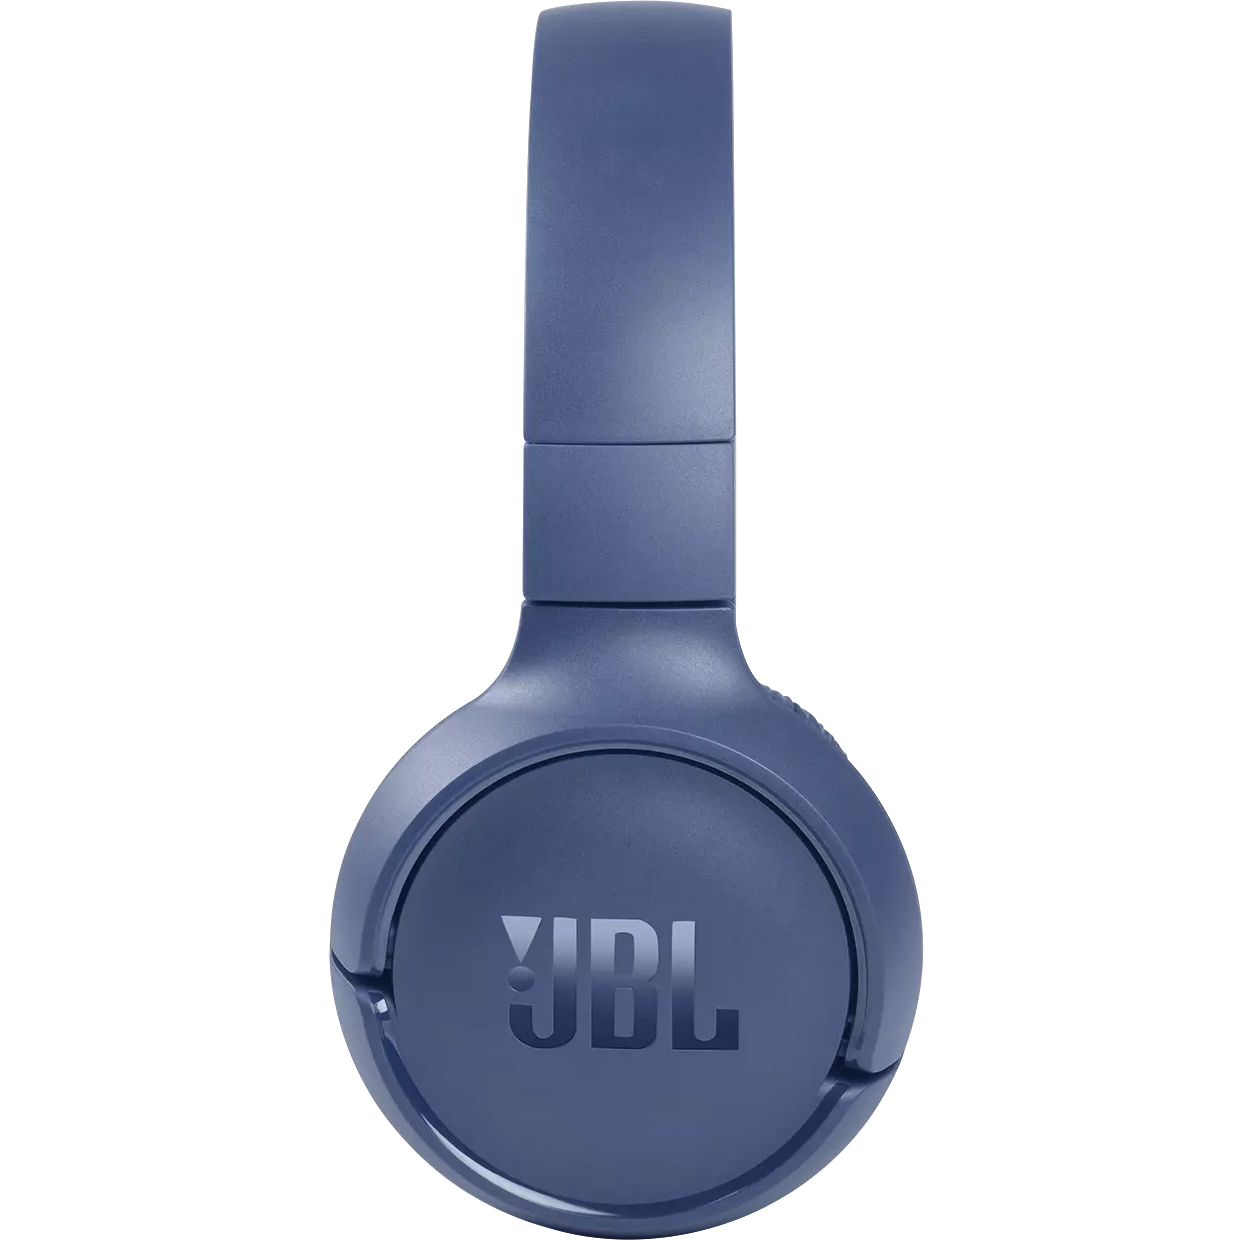 -jbl-tune-510bt-bluetooth-headphones-2C-multipoint-2C-on-ear-2C-blue-jblt510btblueu-